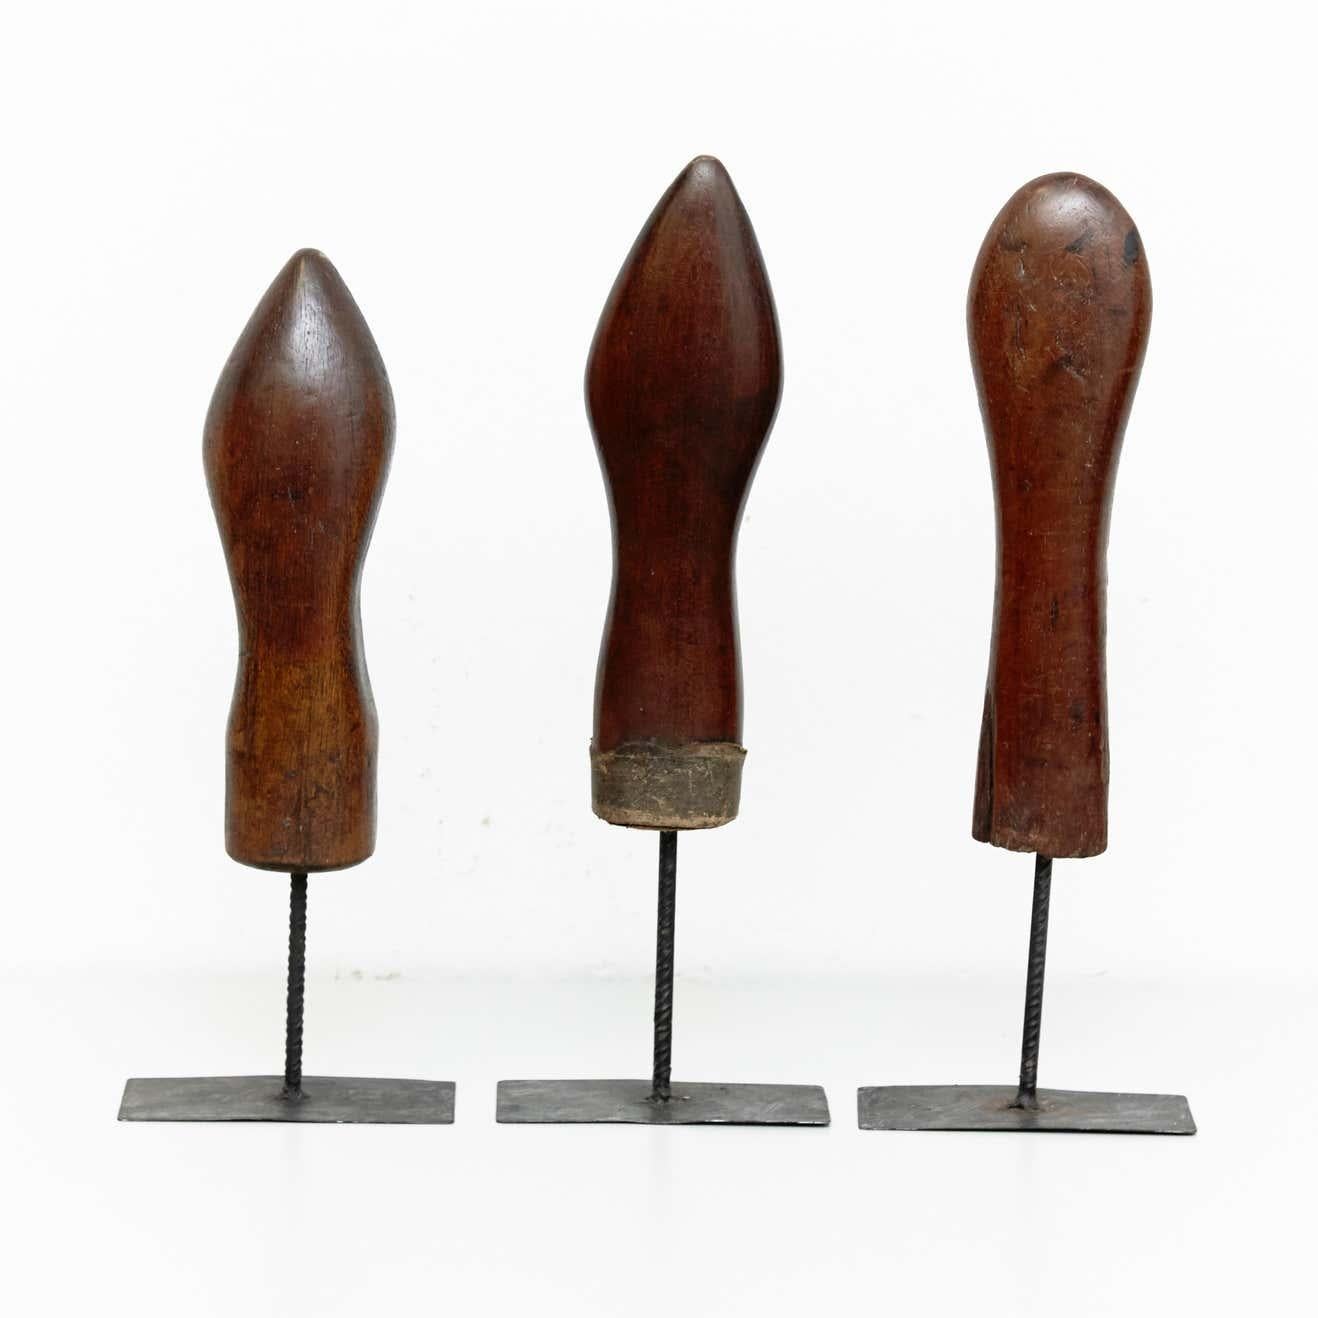 Satz von 3 Skulpturen aus Holz und Metall aus der Mitte des Jahrhunderts, um 1950
Von unbekanntem Künstler, hergestellt in Spanien, um 1950.

In ursprünglichem Zustand mit geringen Gebrauchsspuren, die dem Alter und dem Gebrauch entsprechen, wobei